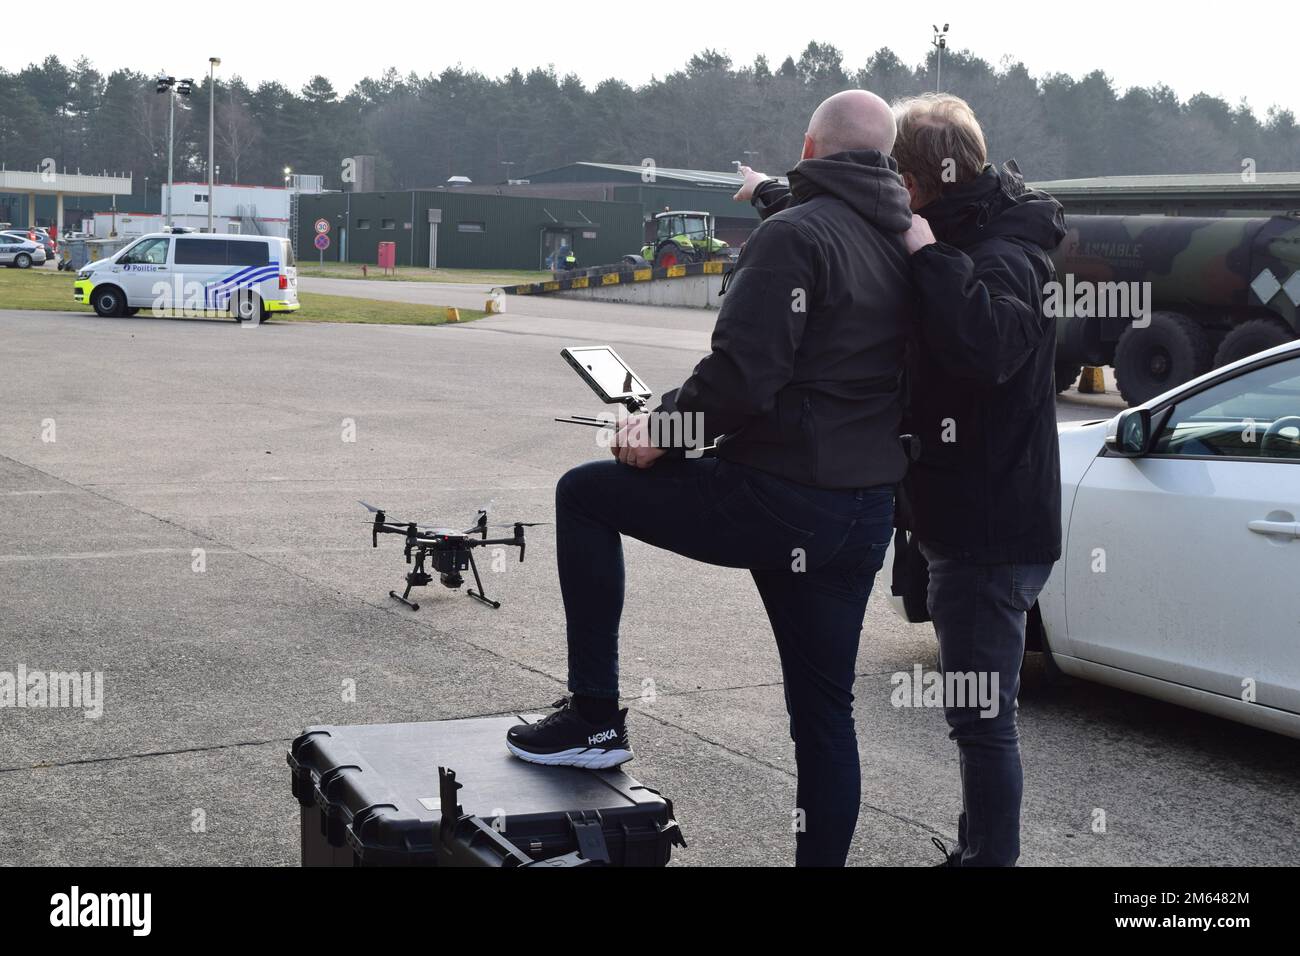 Deux opérateurs de drones travaillant avec des intervenants d'urgence de la nation hôte belge parlent de la trajectoire de vol d'un drone au cours d'un exercice de protection de l'installation. Membres des États-Unis Garnison de l’armée l’équipe d’intervention d’urgence du Benelux s’est réunie avec des intervenants d’urgence belges pour effectuer un exercice de protection de l’installation au dépôt militaire de Zutendaal, en Belgique, au 30 mars. Le partenariat visait à évaluer le temps de réponse et les efforts de coordination entre les services d'urgence, tandis que les groupes jouaient le rôle de la découverte d'un dispositif explosif improvisé embarqué (VBIED) au dépôt, stationné près d'un réservoir de 100 000 litres Banque D'Images